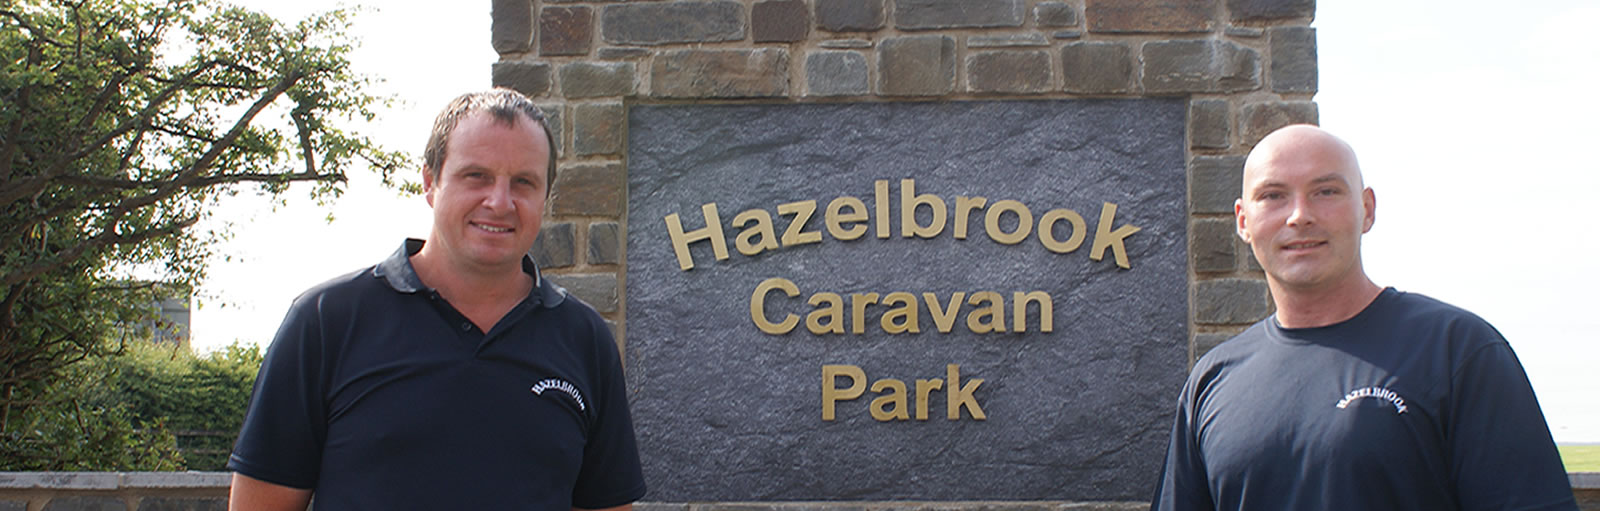 Hazelbrook Caravan Park